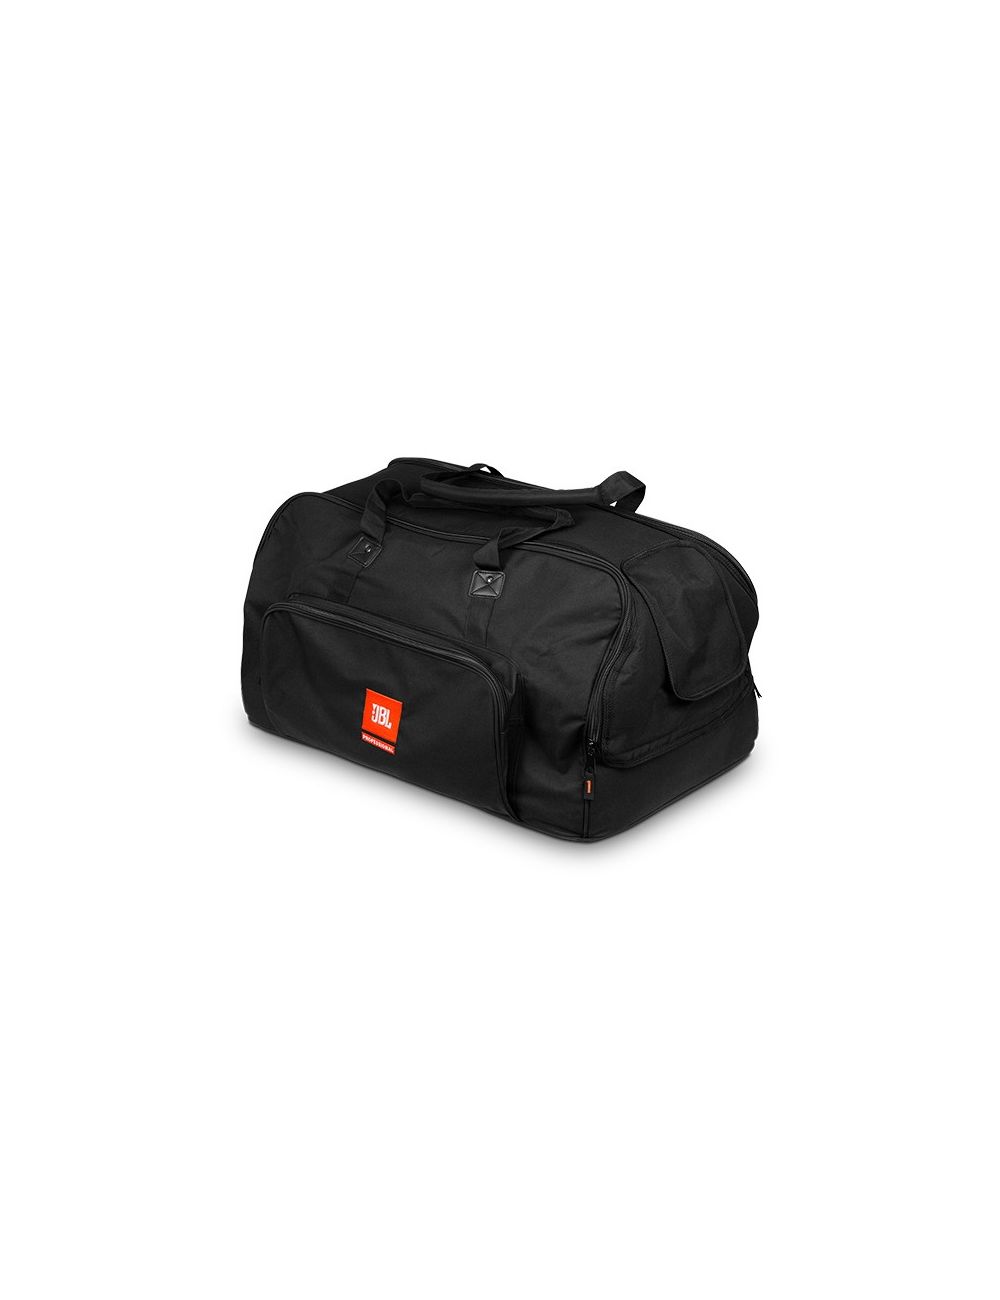 Carrying bag for EON615 speaker